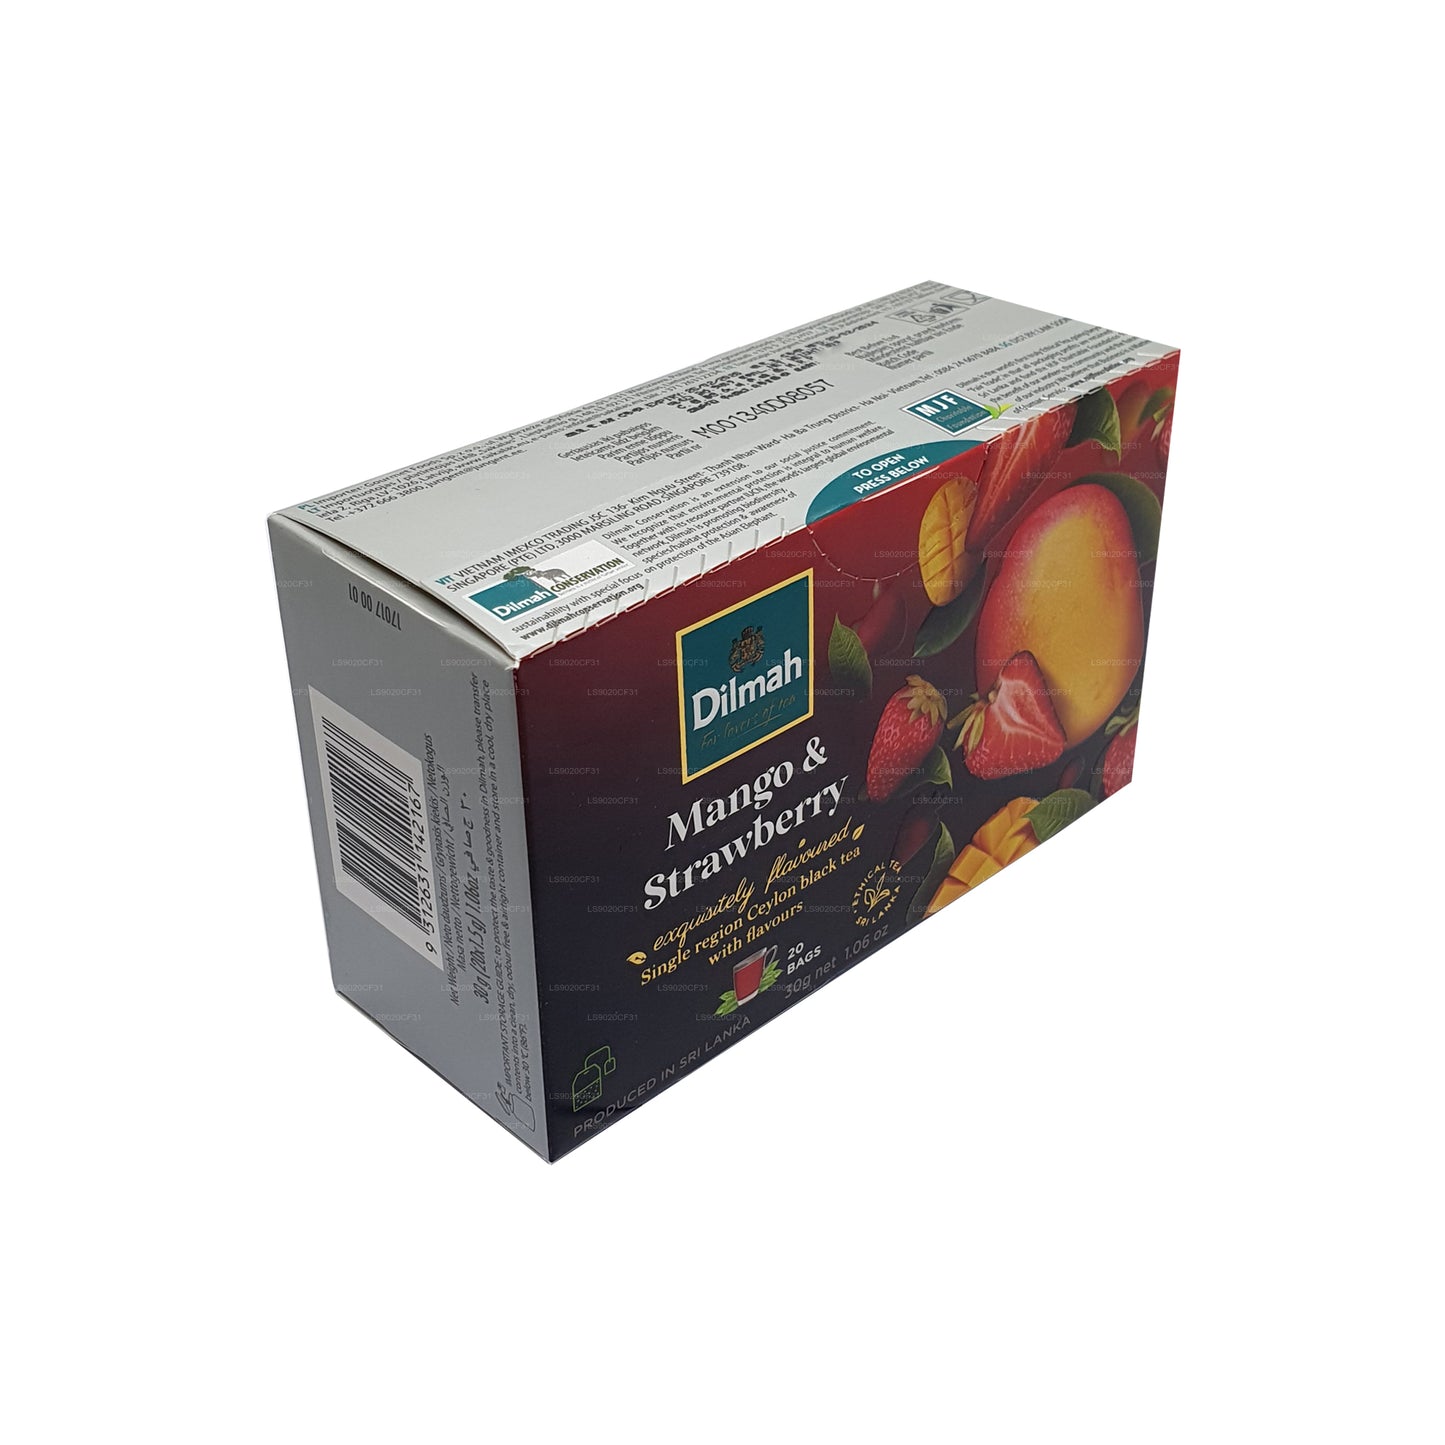 Té Dilmah con sabor a mango y fresa (30 g) 20 bolsitas de té